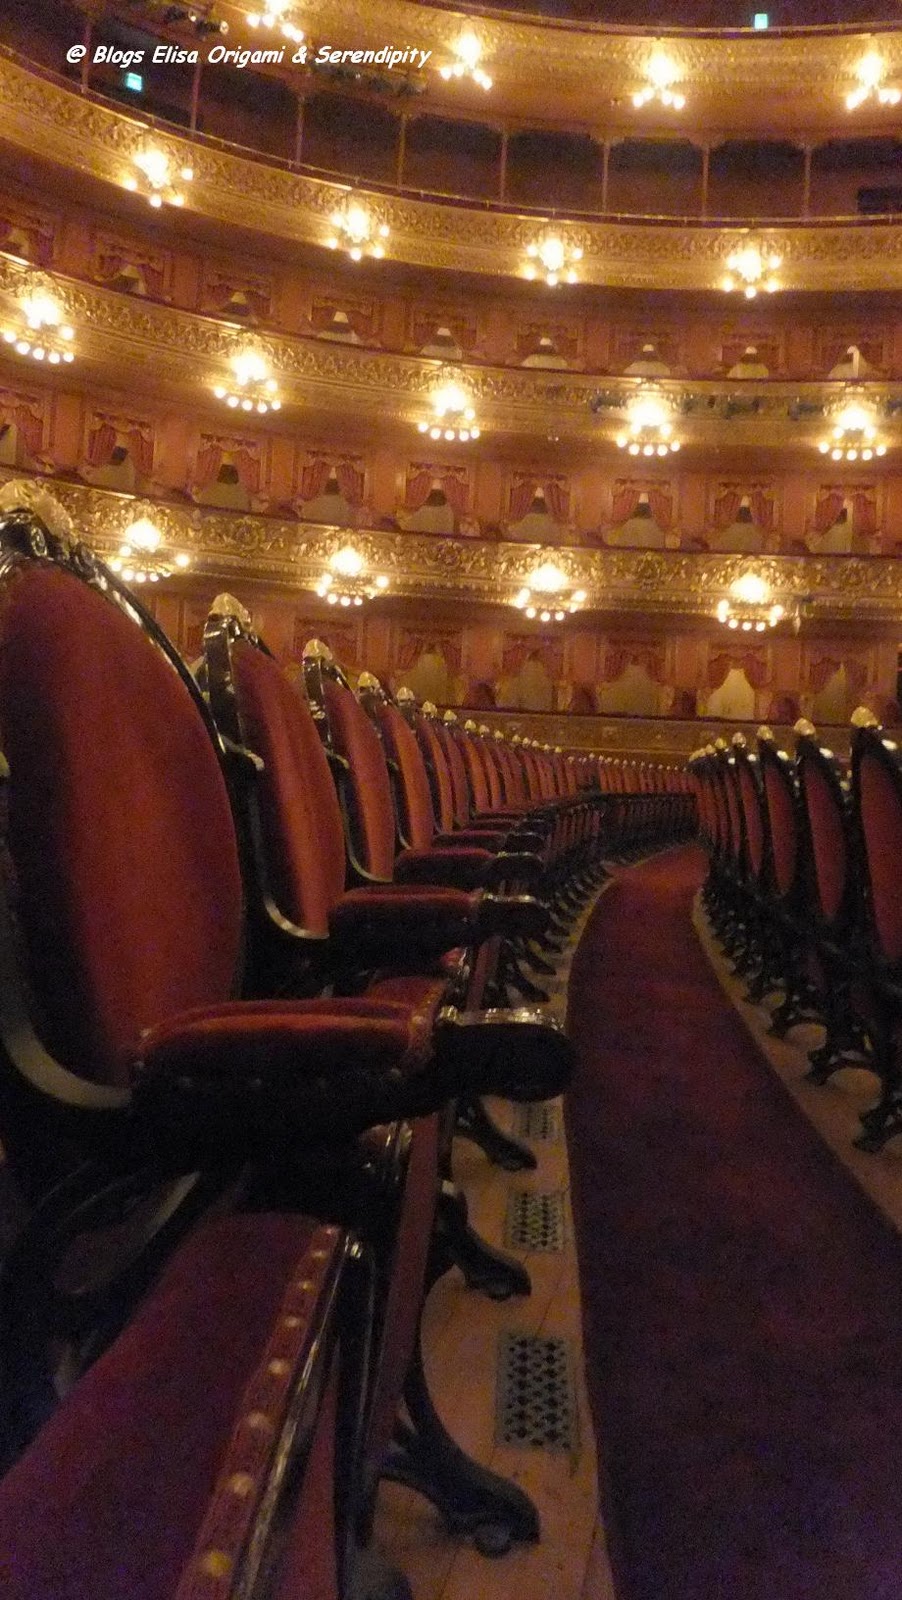 Visita guiada al Teatro Colón, Ópera, Buenos Aires, Argentina, Elisa N, Blog de Viajes, Lifestyle, Travel